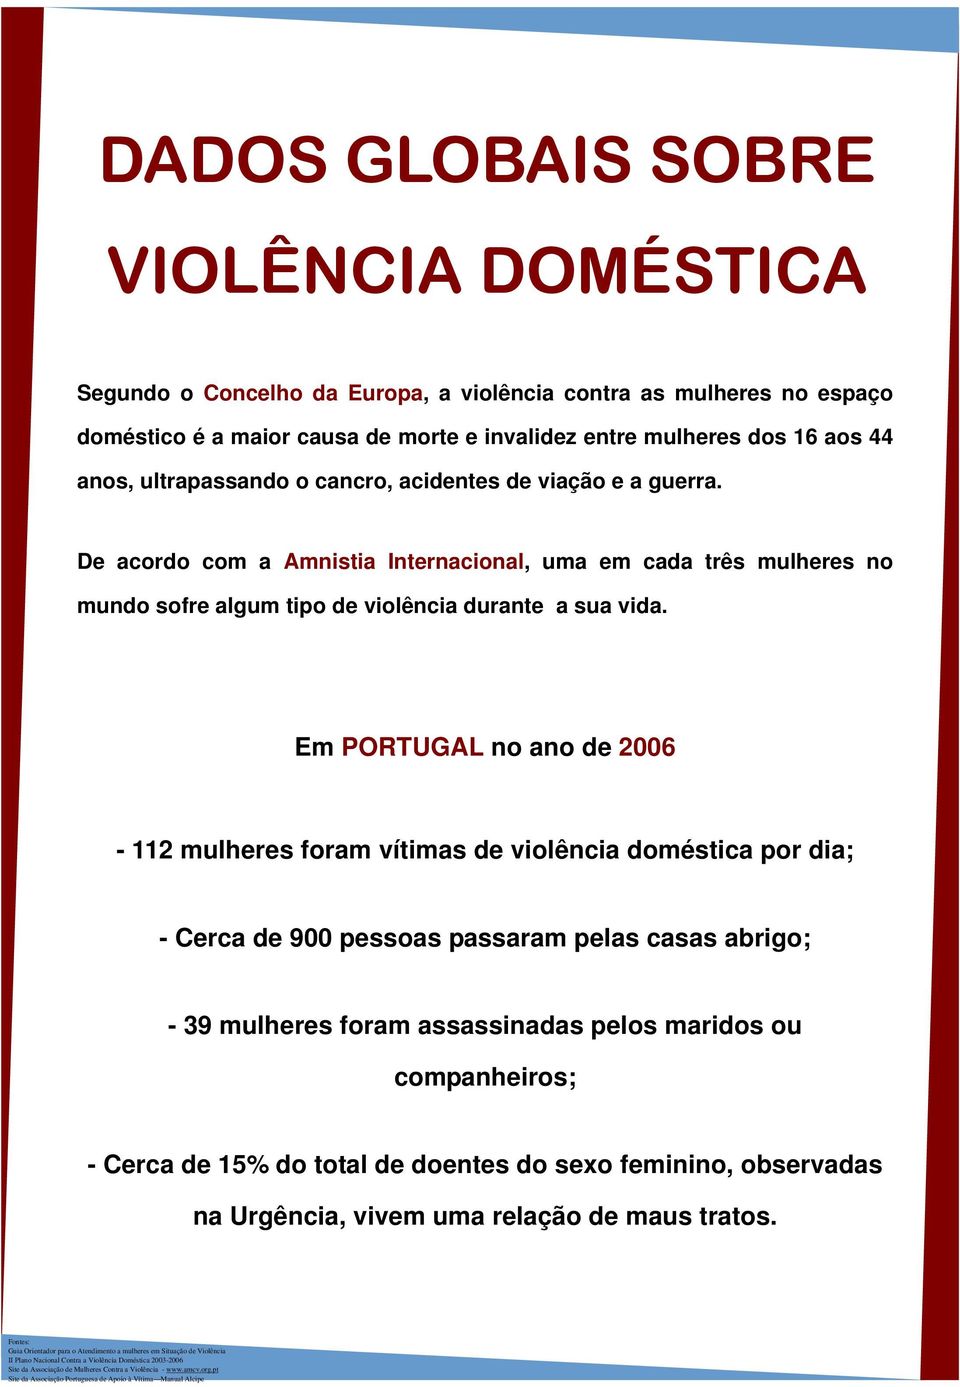 De acordo com a Amnistia Internacional, uma em cada três mulheres no mundo sofre algum tipo de violência durante a sua vida.